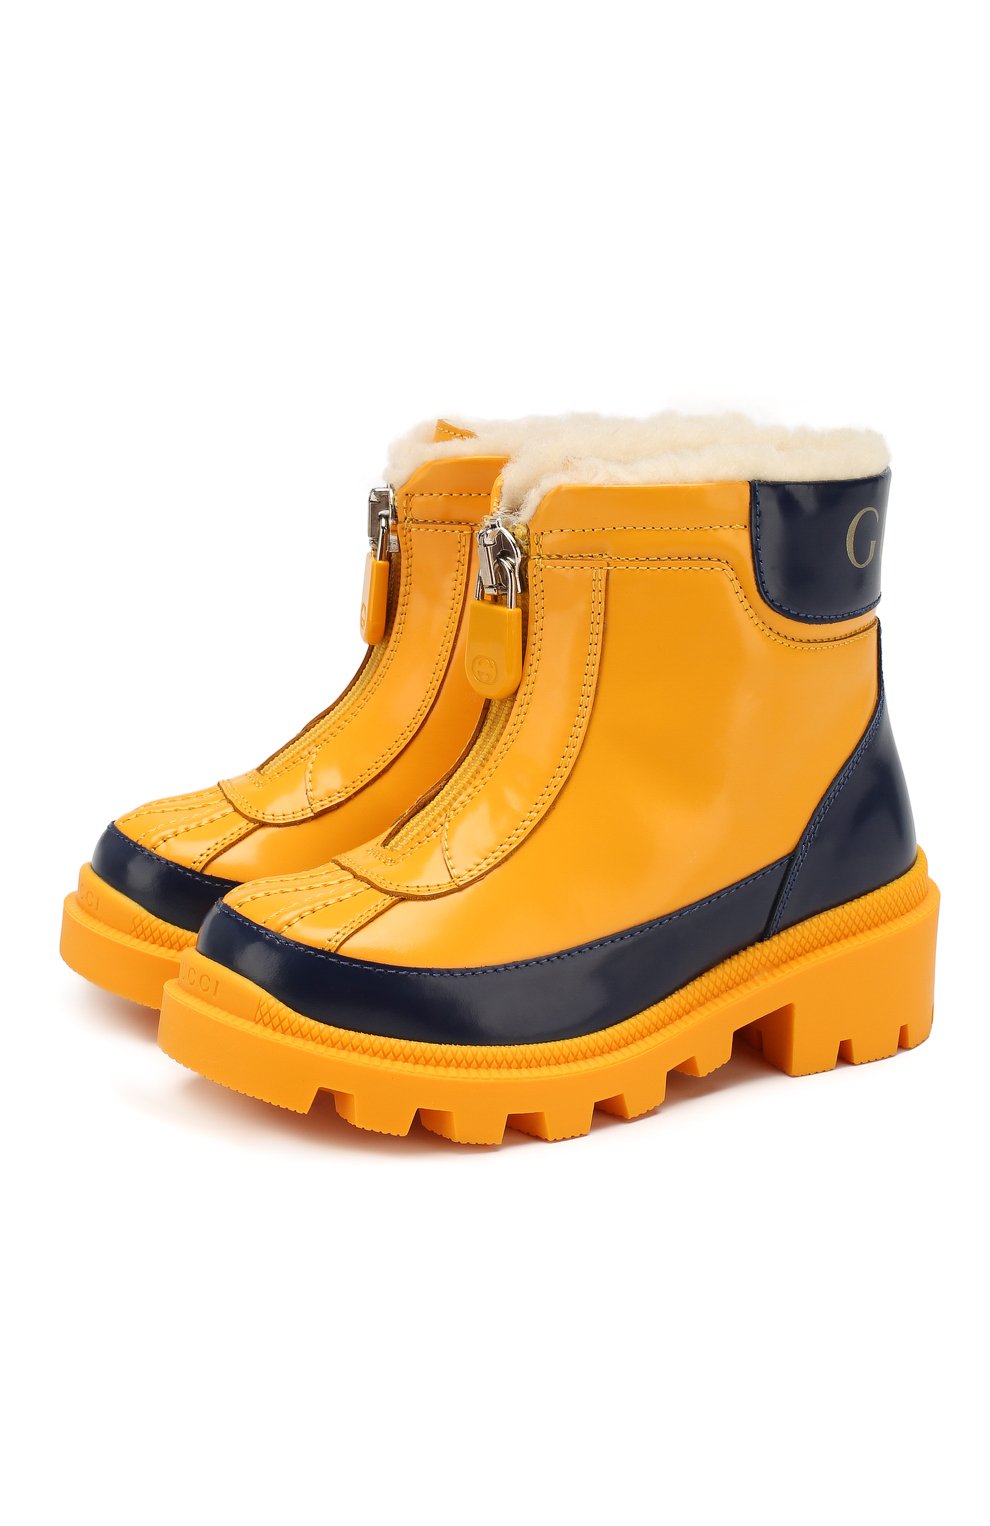 Кожаные ботинки GUCCI детские желтого цвета — купить в интернет-магазине  ЦУМ, арт. 580728/D73F0